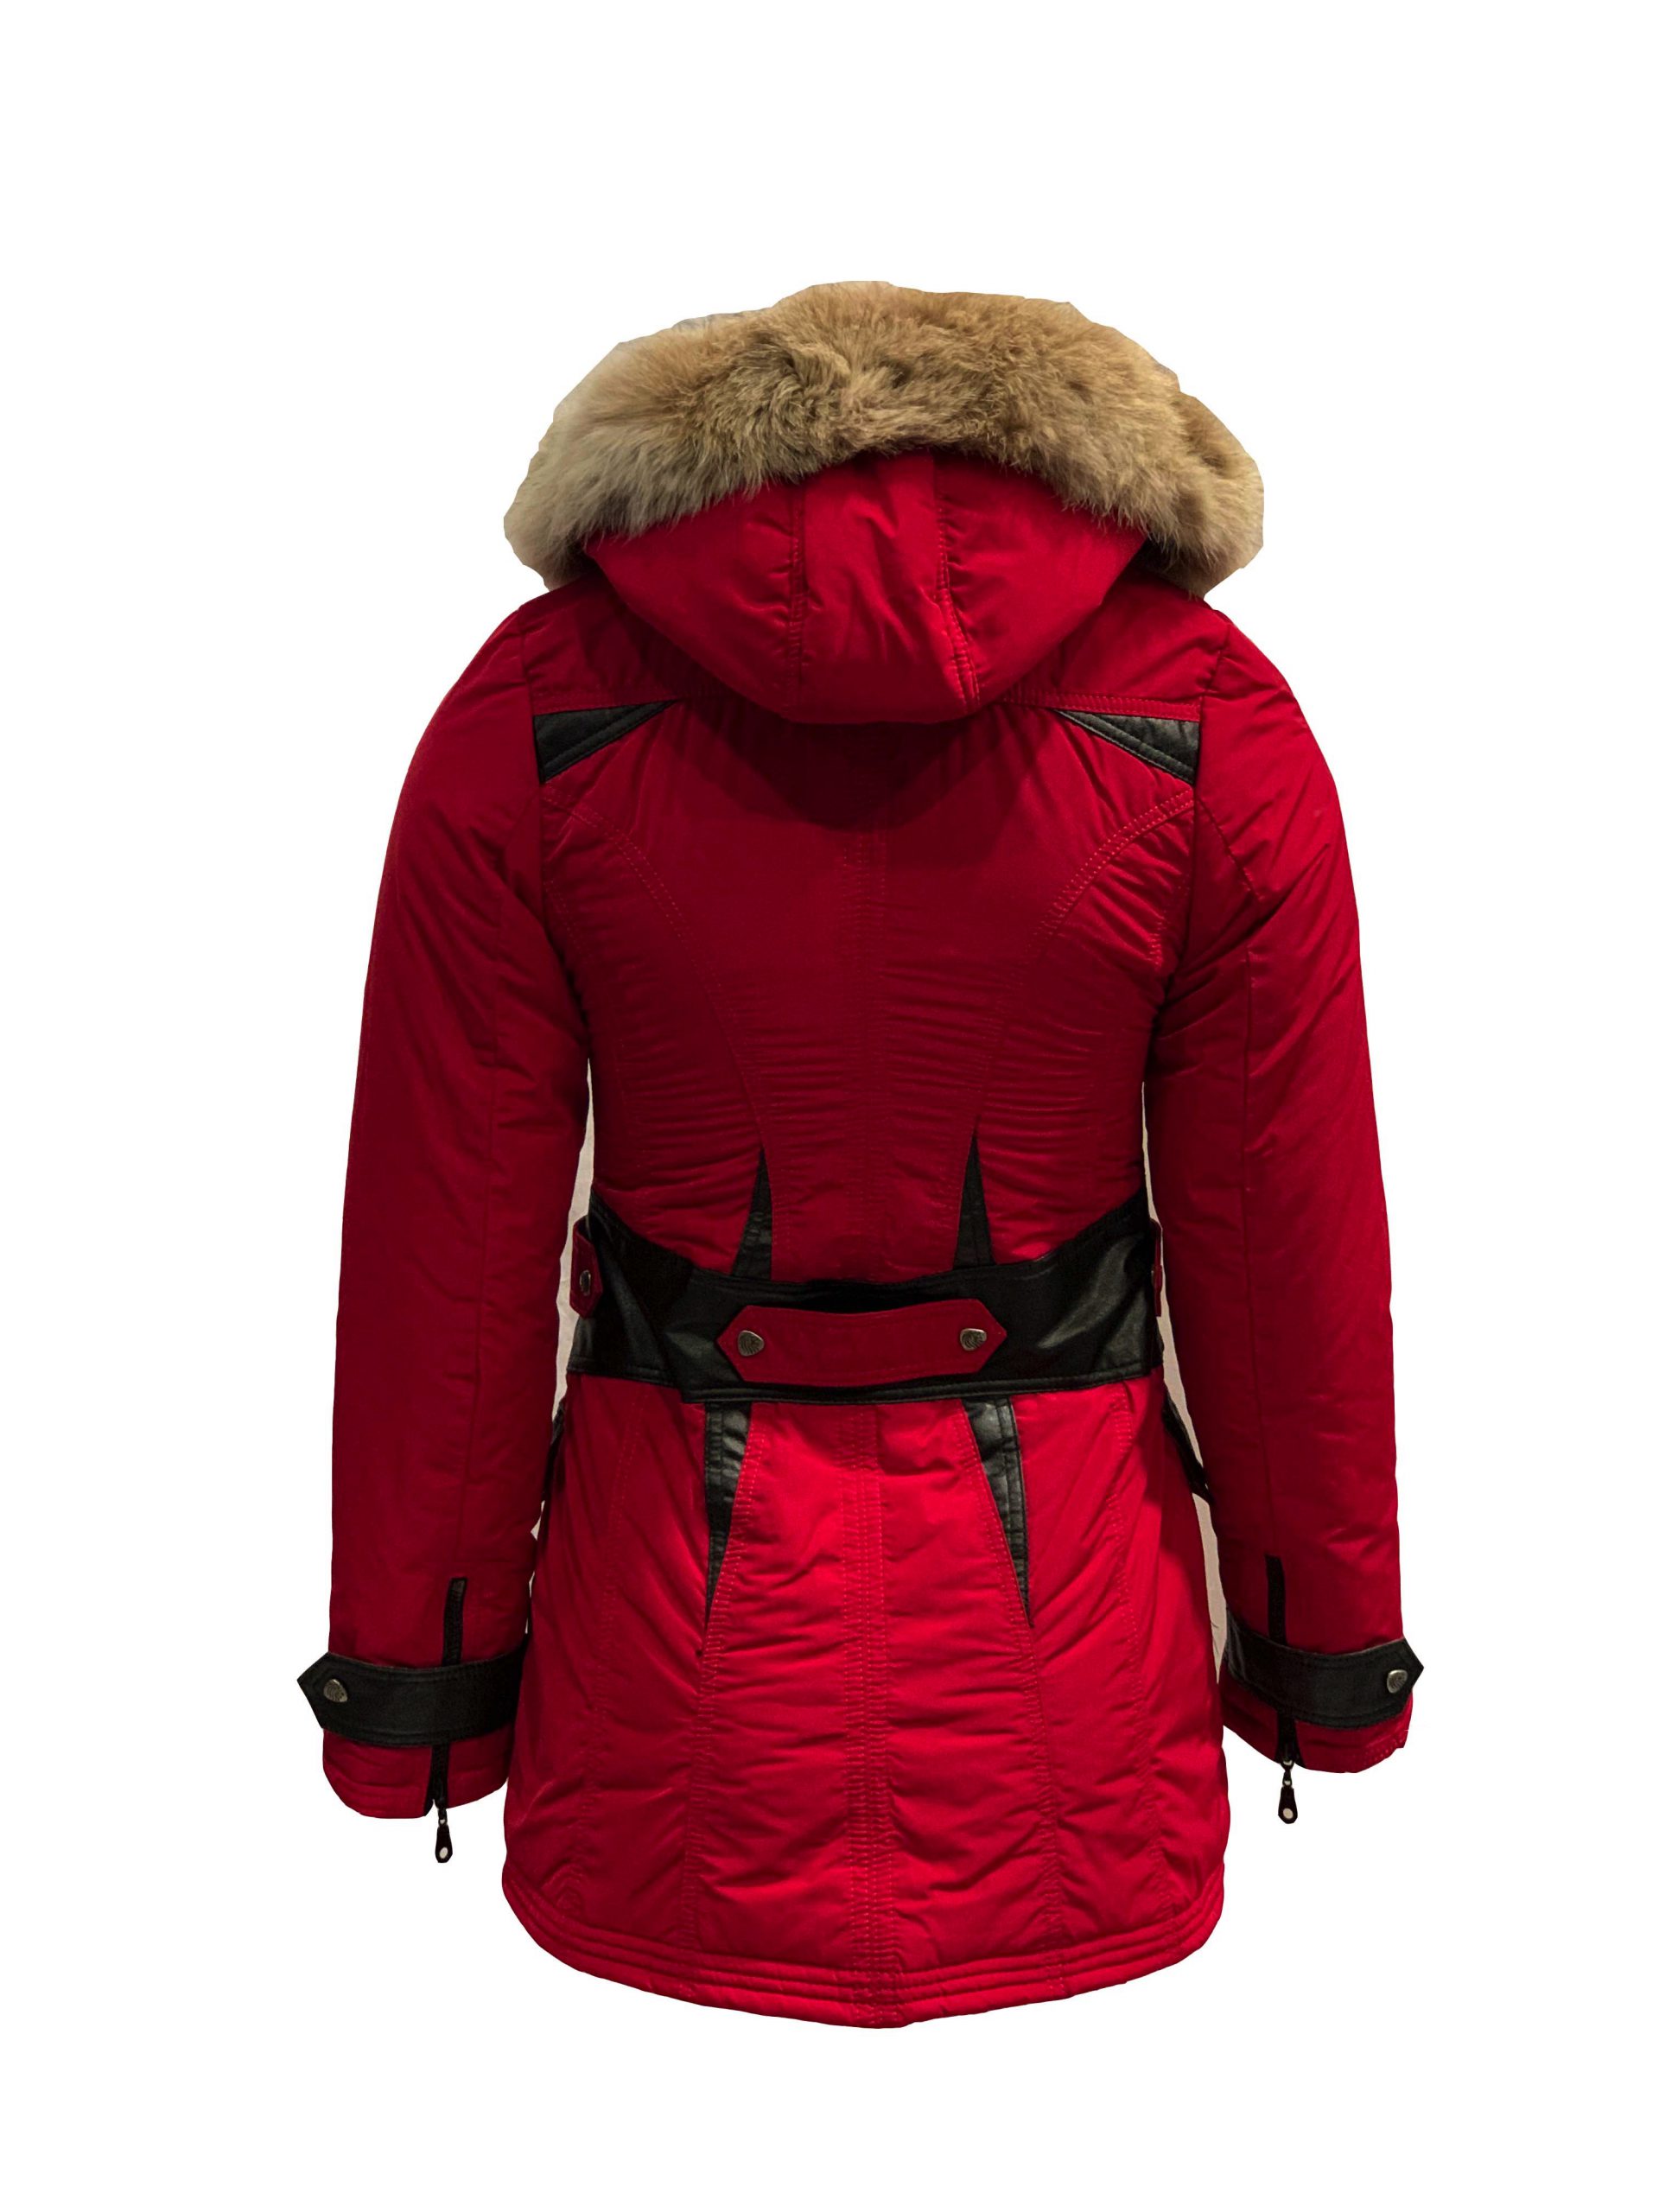 Moet jukbeen korting Rood dames winter jas met afneembaar bont en capuchon -Jolanda – BK Leder